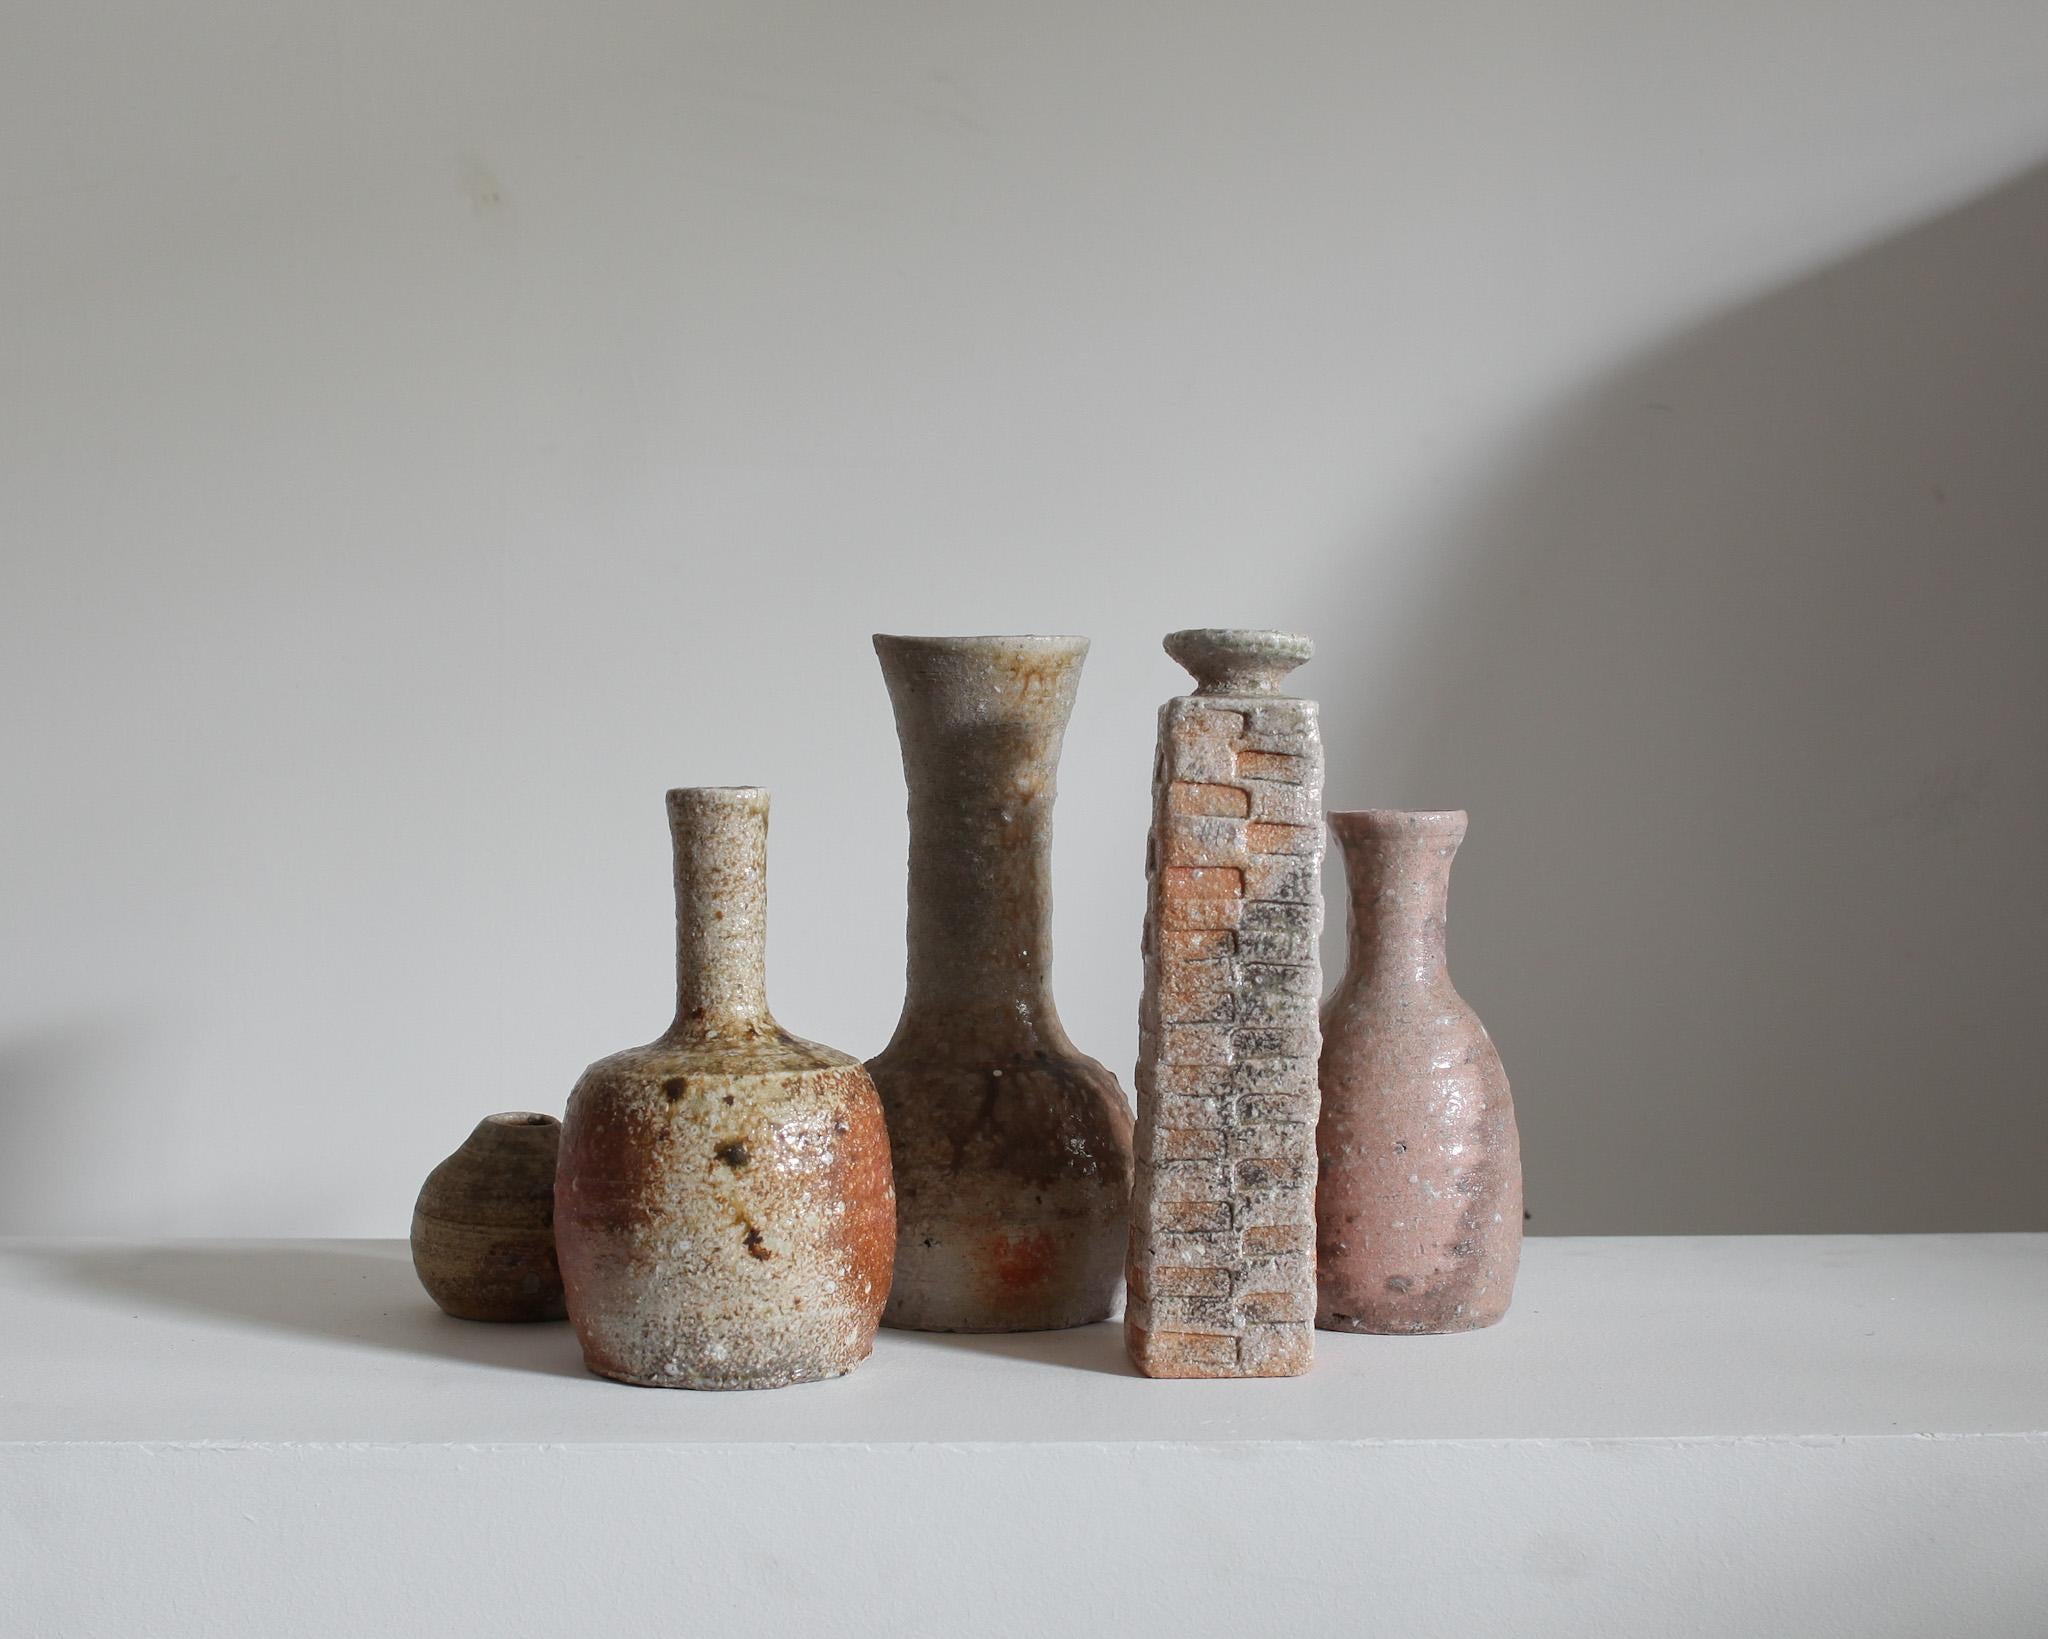 Eine Sammlung von fünf einzigartigen Steingut-/Keramikgefäßen aus der berühmten Töpferstadt Mashiko, Japan.

Sie stammen aus dem ehemaligen Studio eines Töpfers aus Mashiko.

Diese taktilen Gefäße sind alle von einer erdigen Wabi-Sabi-Ästhetik